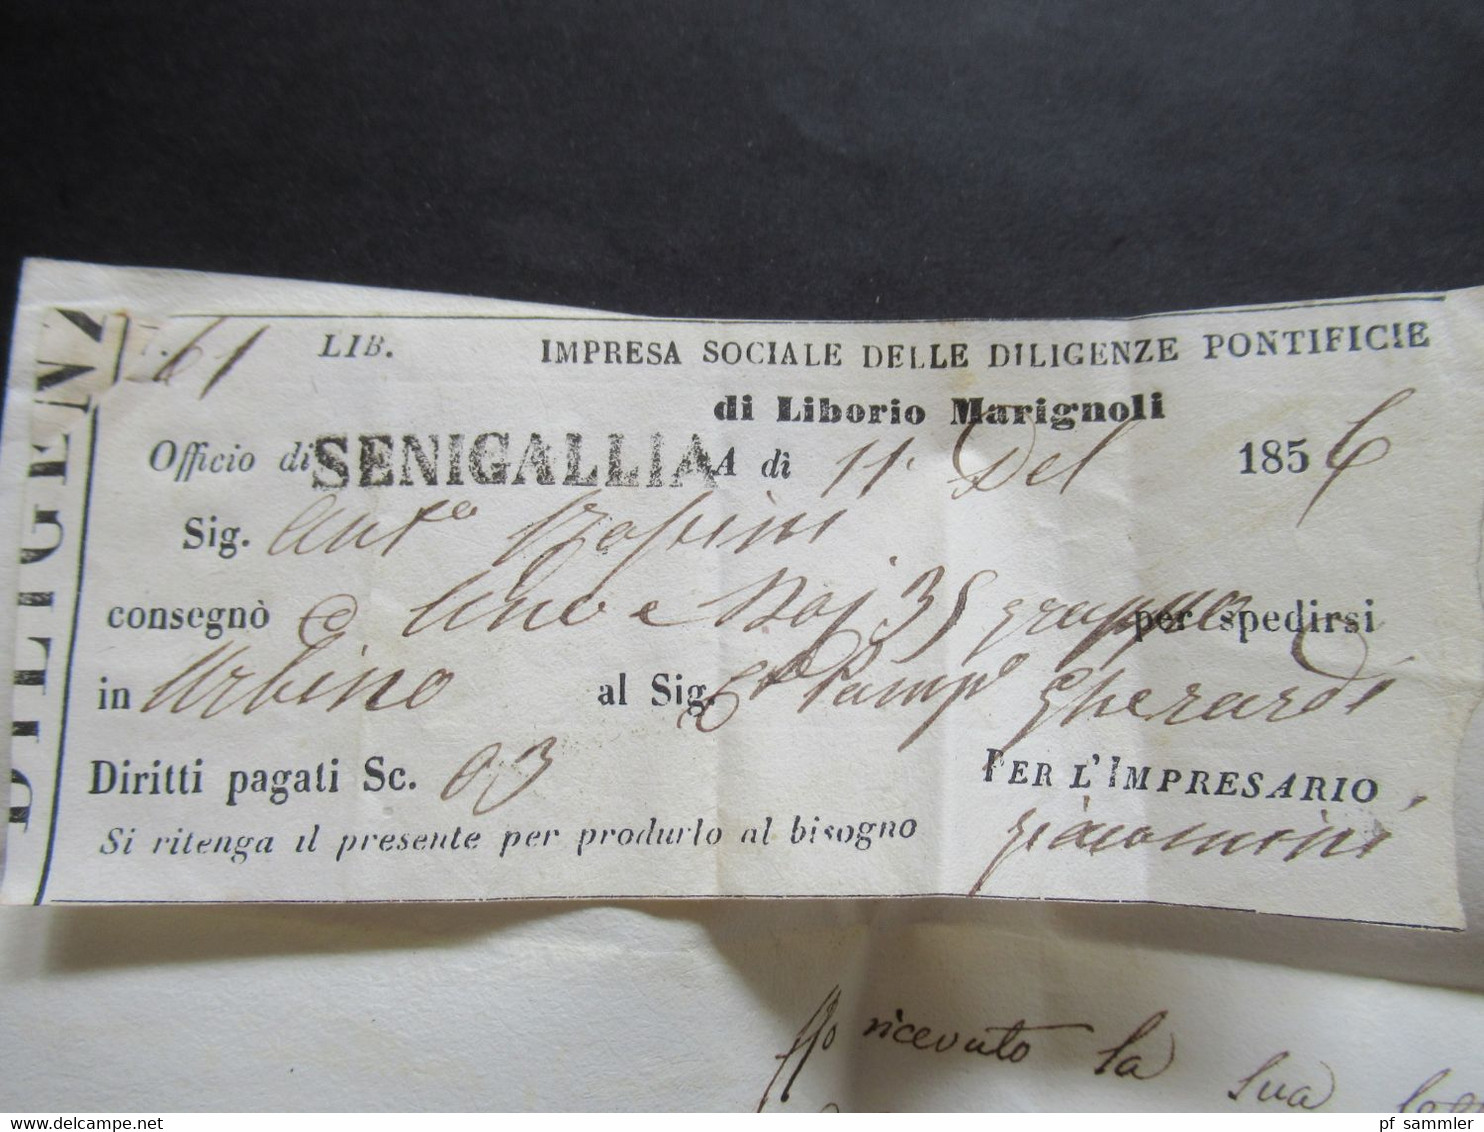 Italien 1856 L1 Pesaro Postkutsche / impresa sociale delle diligenze pontificie di Liborio Marignoli Stempel Senigallia